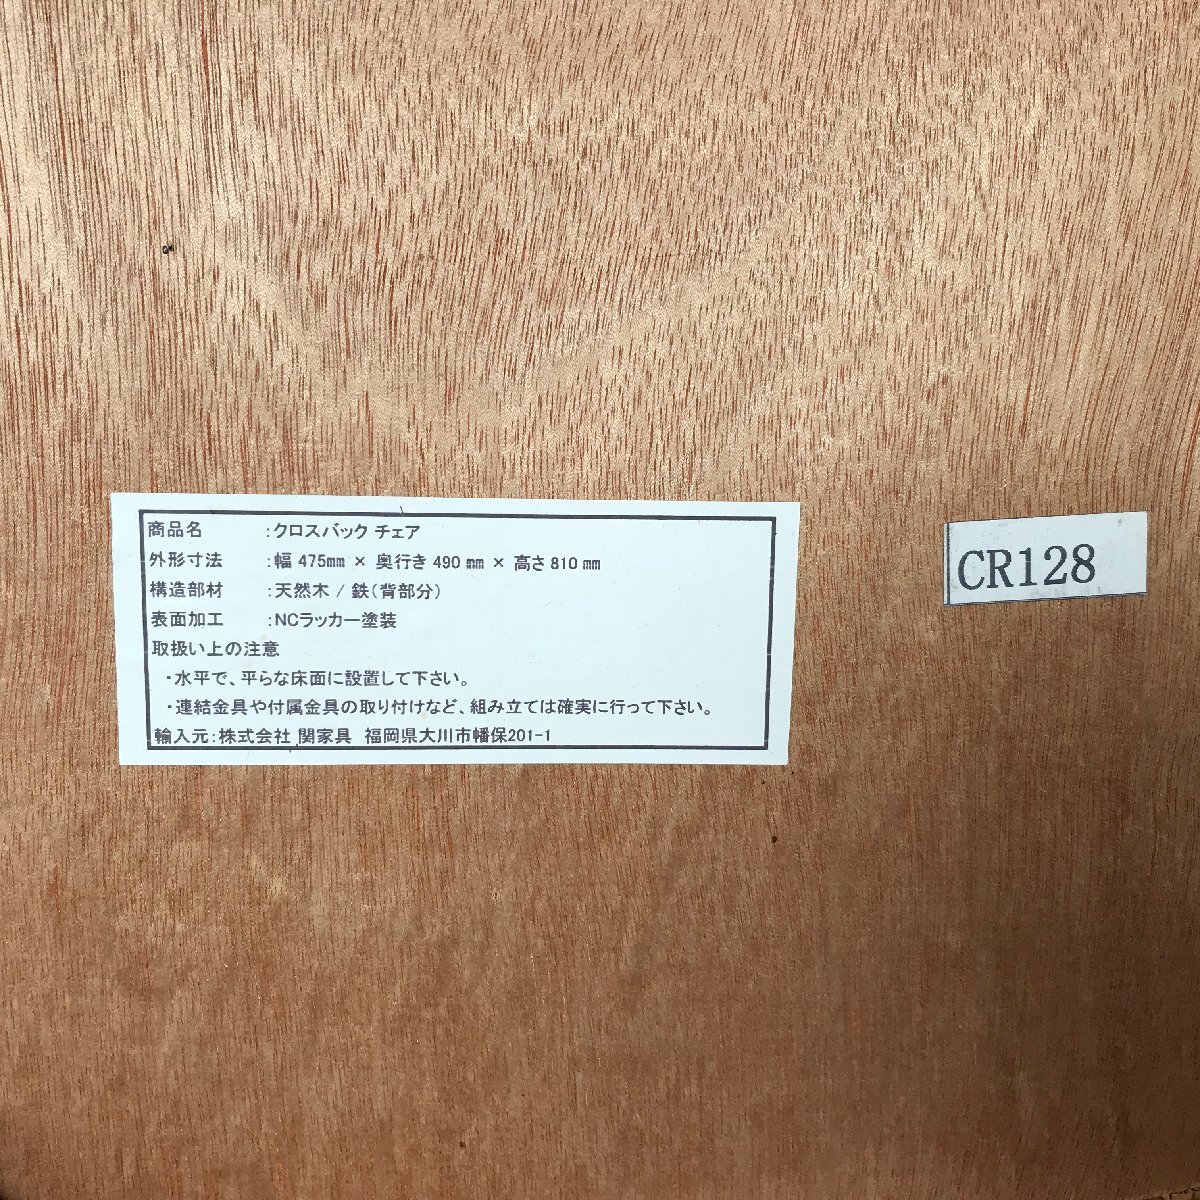 1204 knot antiques Cross задний стул дуб материал светло-коричневый CRASH GATE. мебель обычная цена 4 десять тысяч иен 2 ножек комплект 